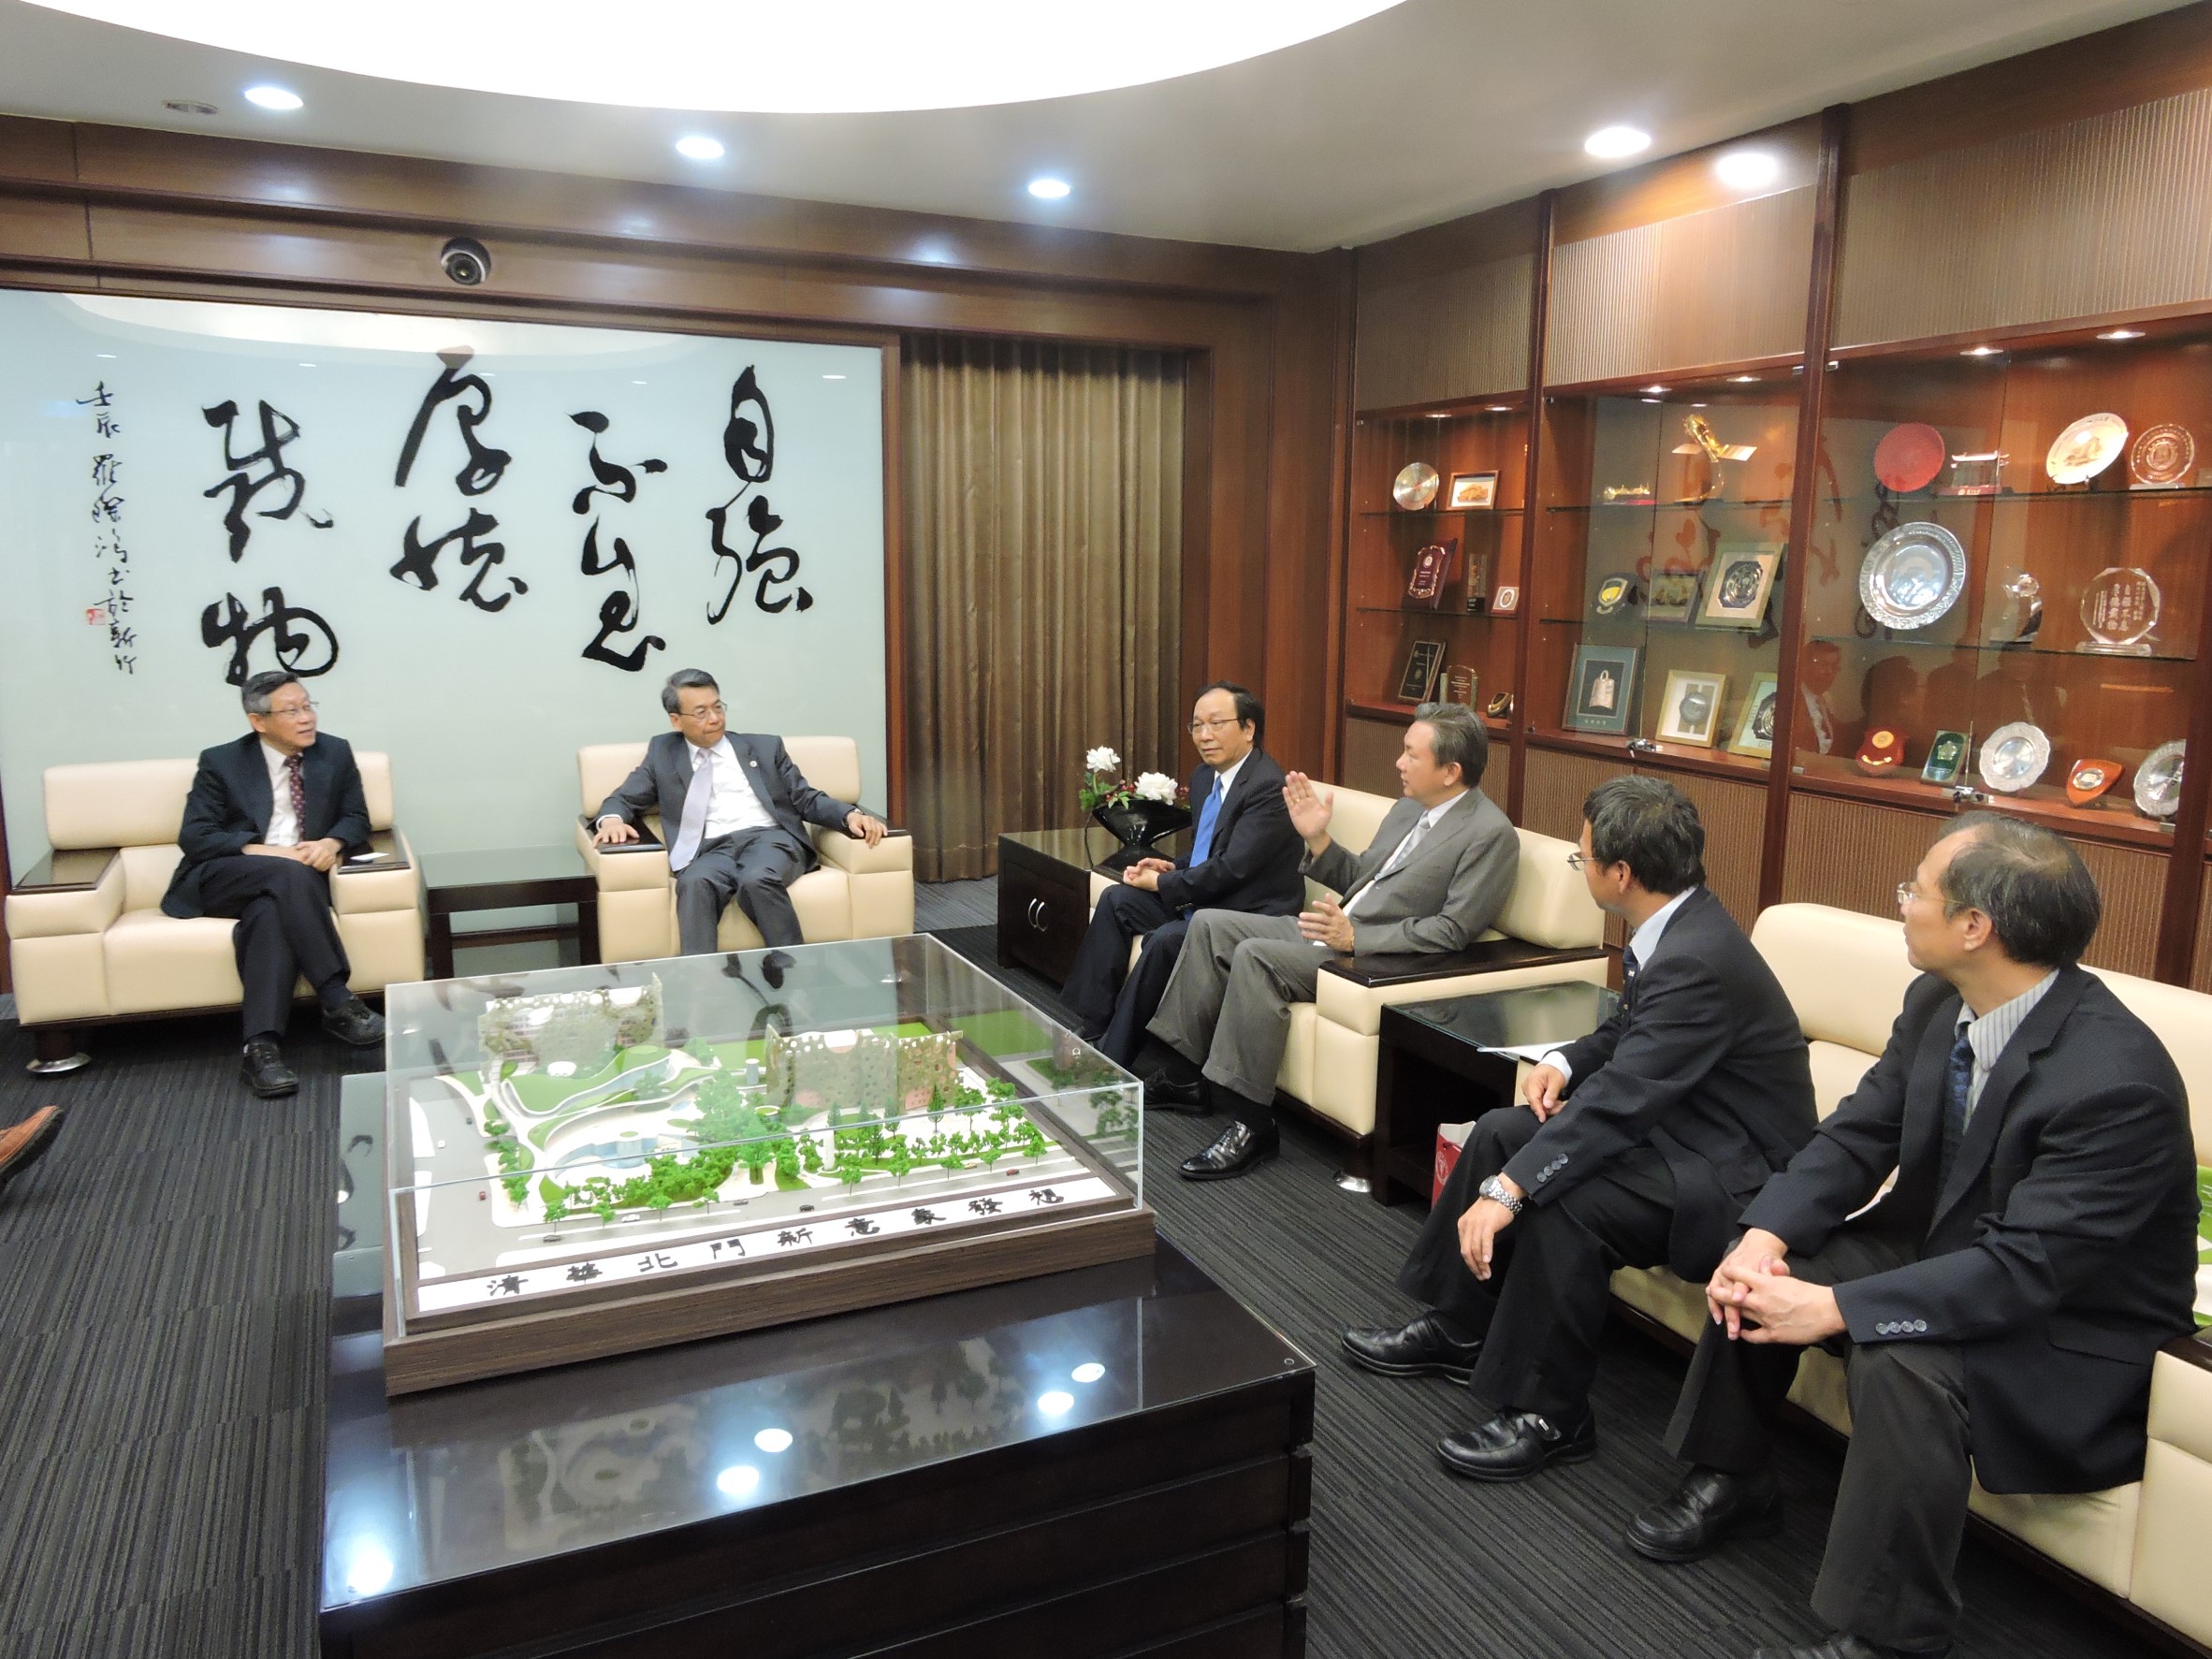 李文華校長與清大賀陳弘校長對跨校際學術合作相談甚歡。